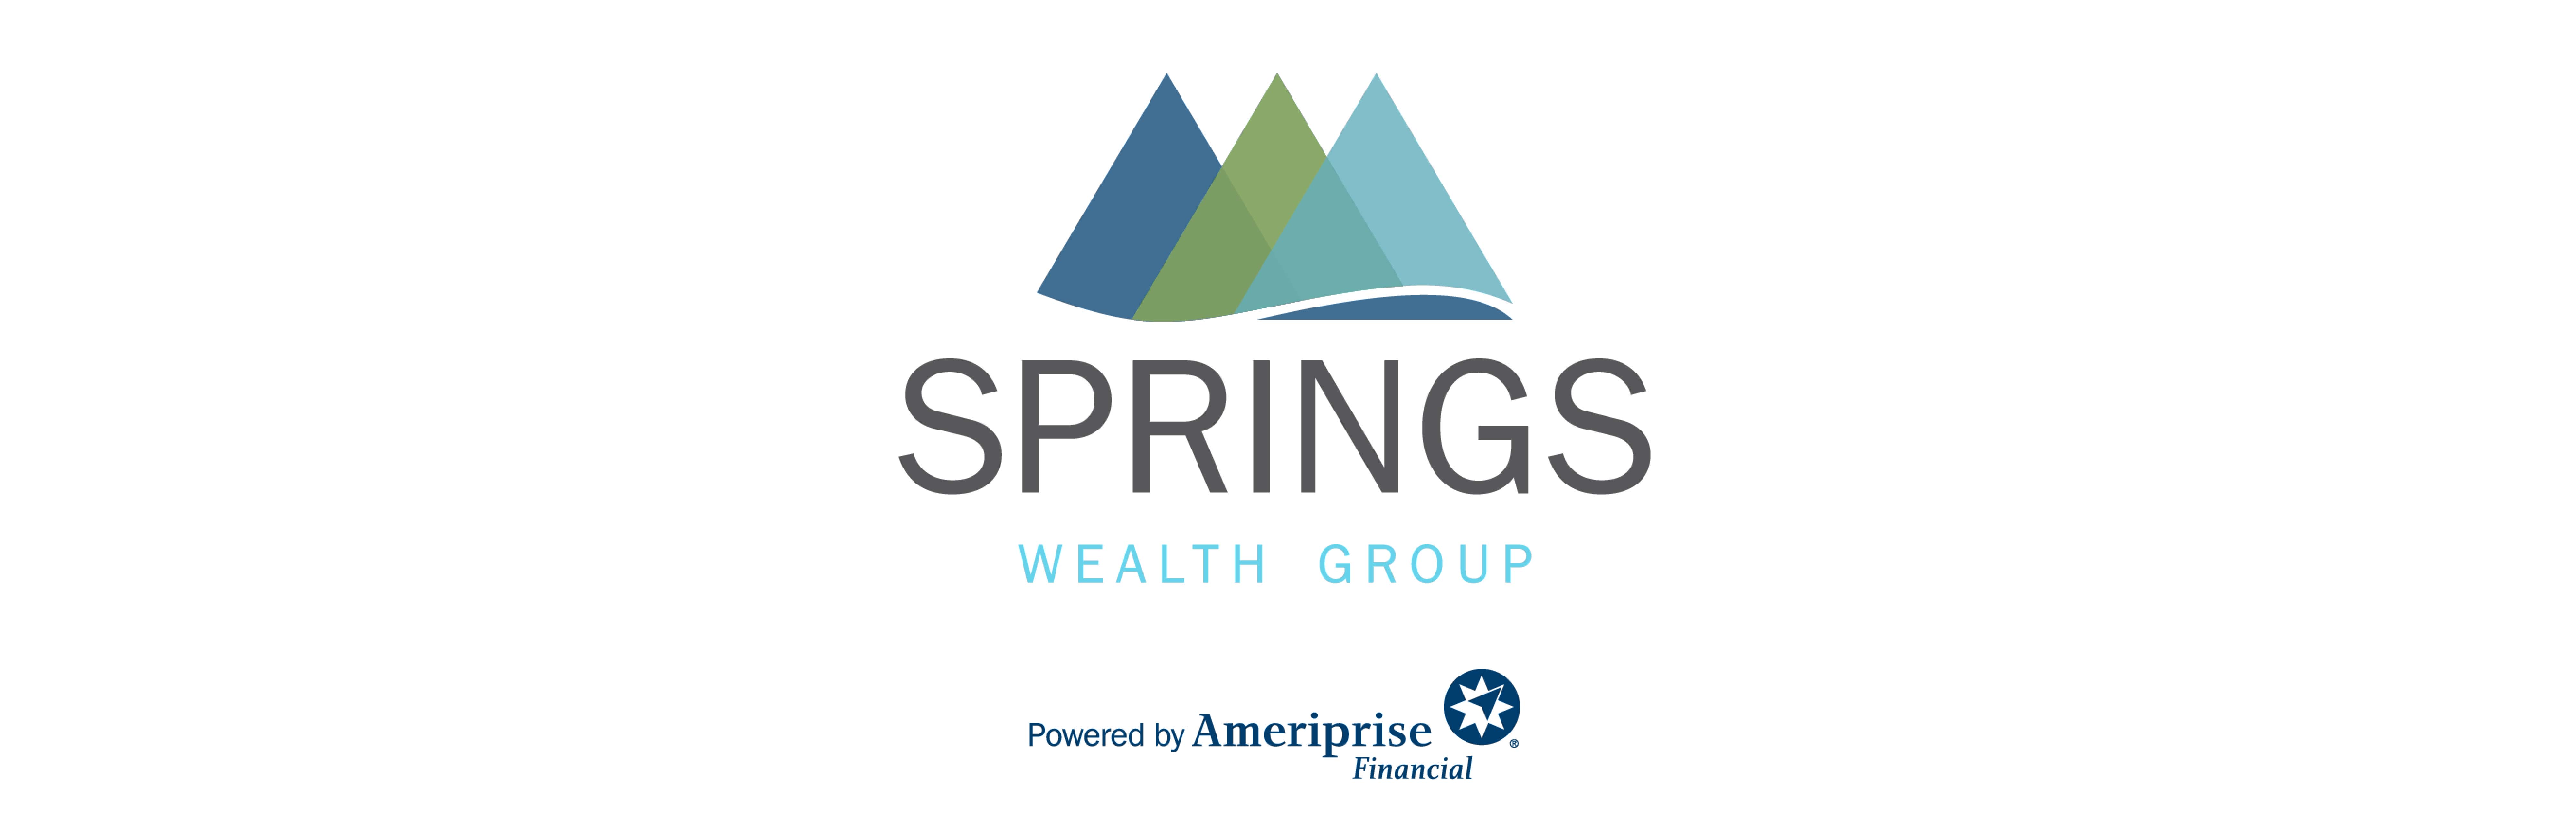 Springs Wealth Group CF01